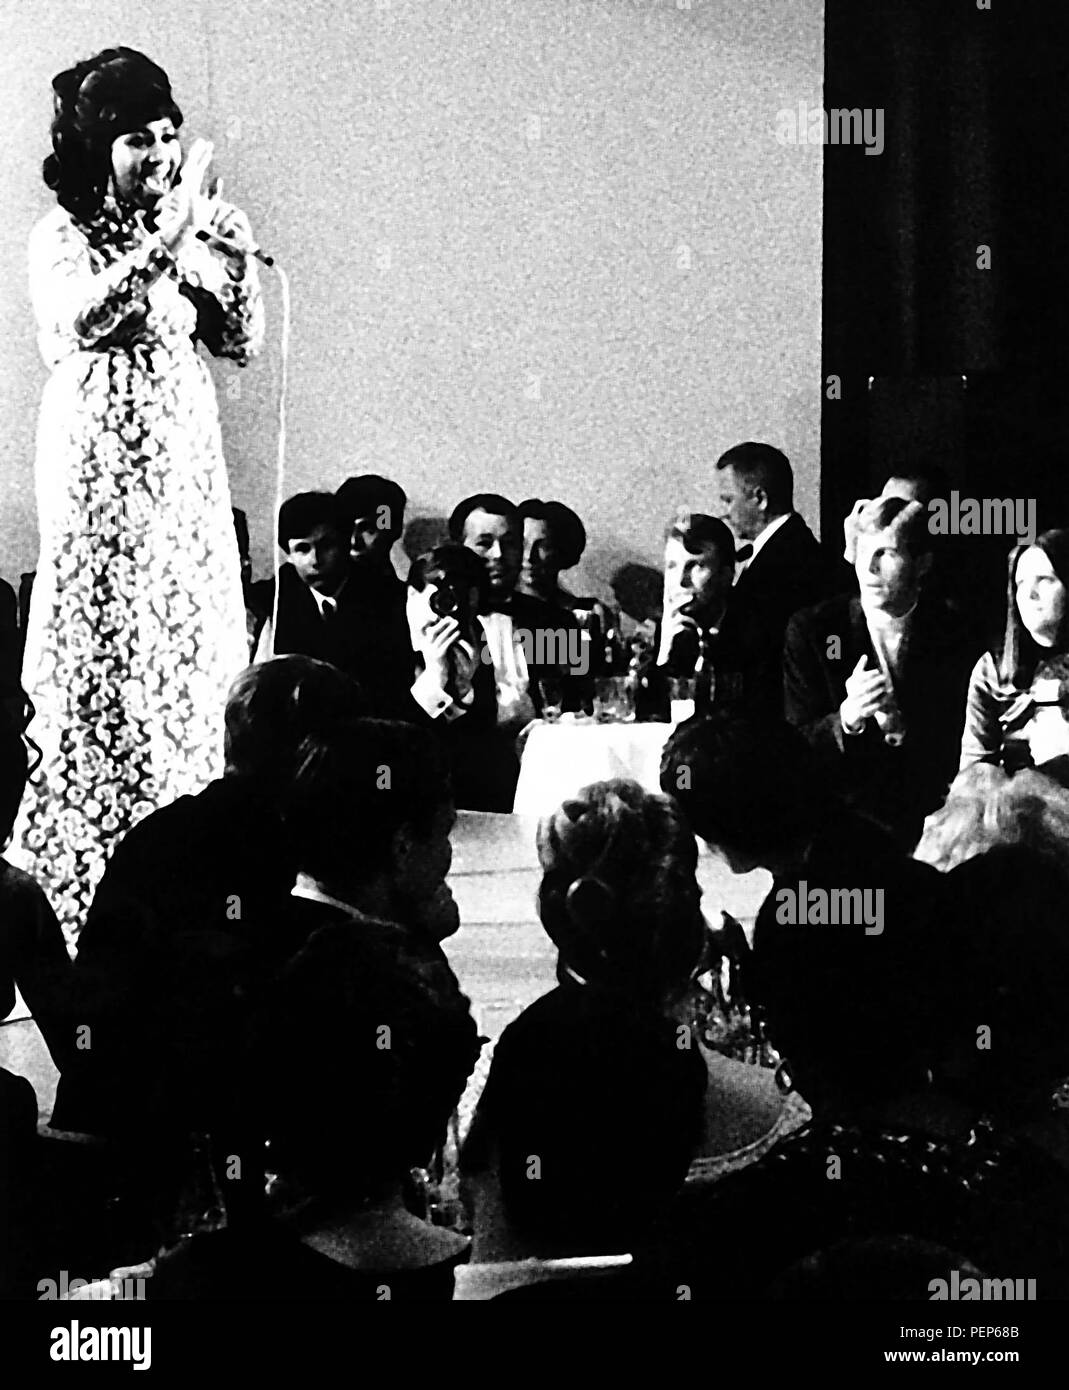 1968 - Aretha Franklin en Roma1968. Crédito: Globe Photos/ZUMAPRESS.com/Alamy Live News Foto de stock